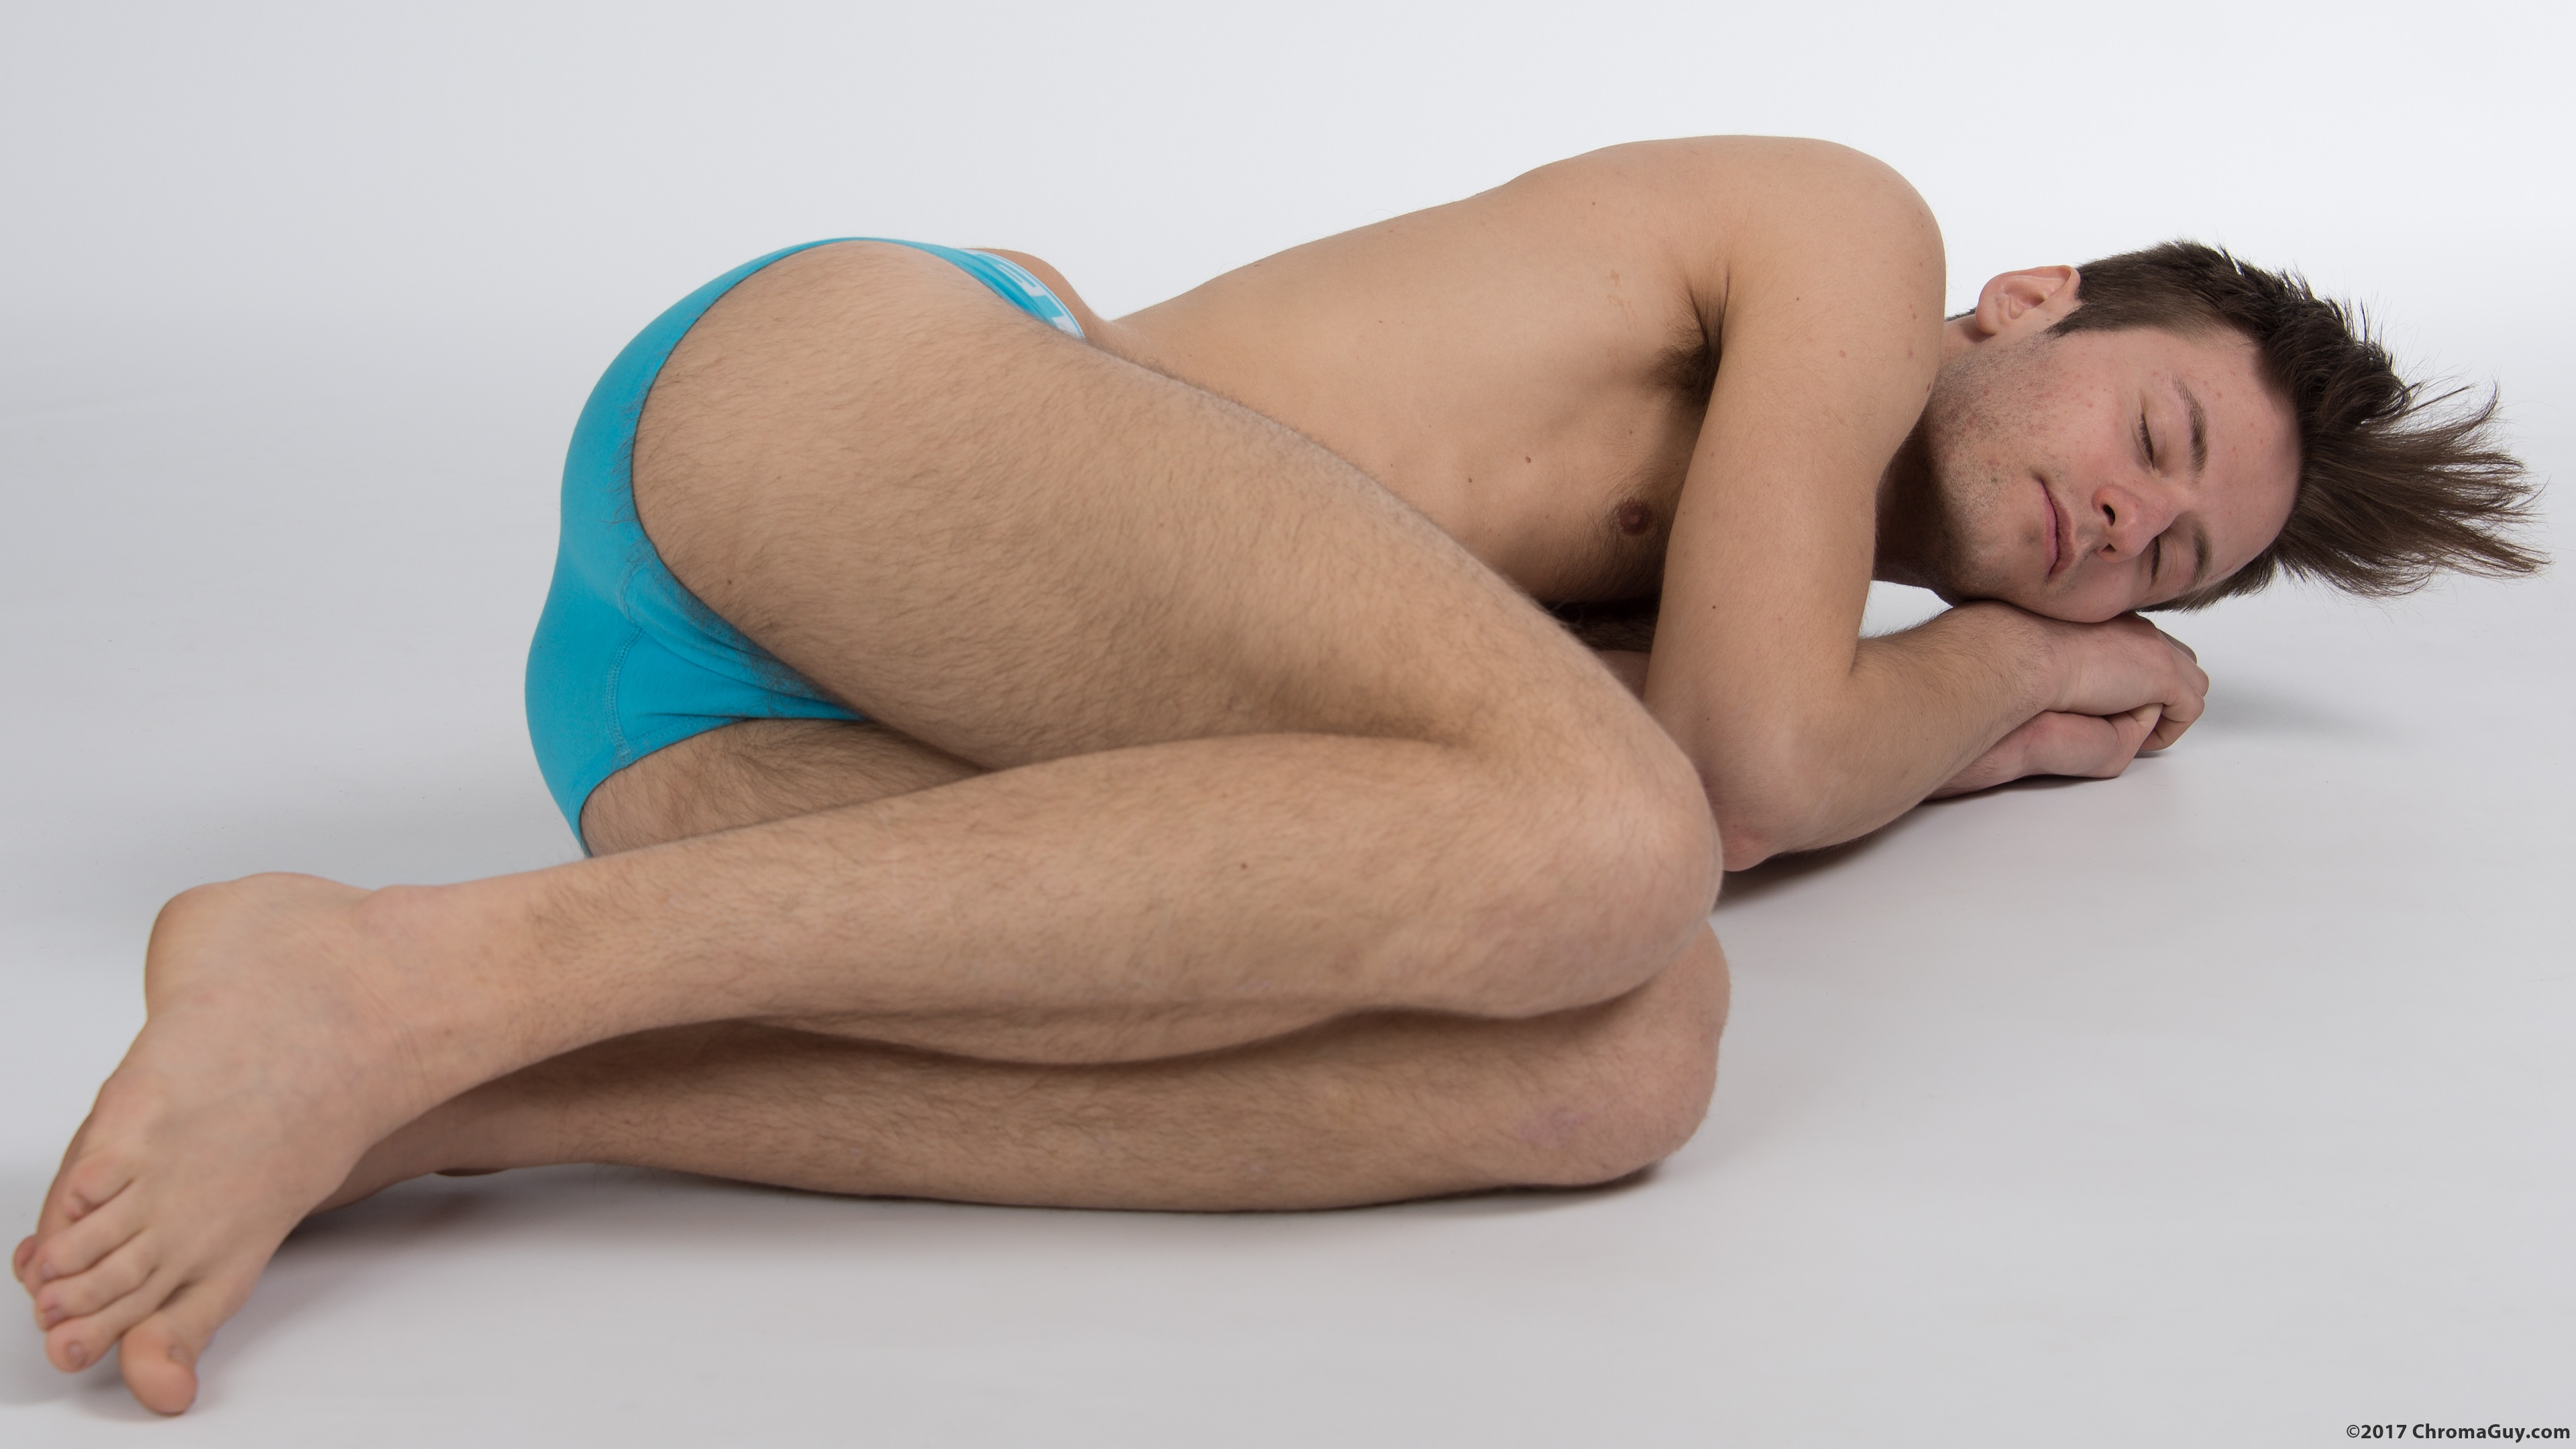 Guy lying sideways in underwear